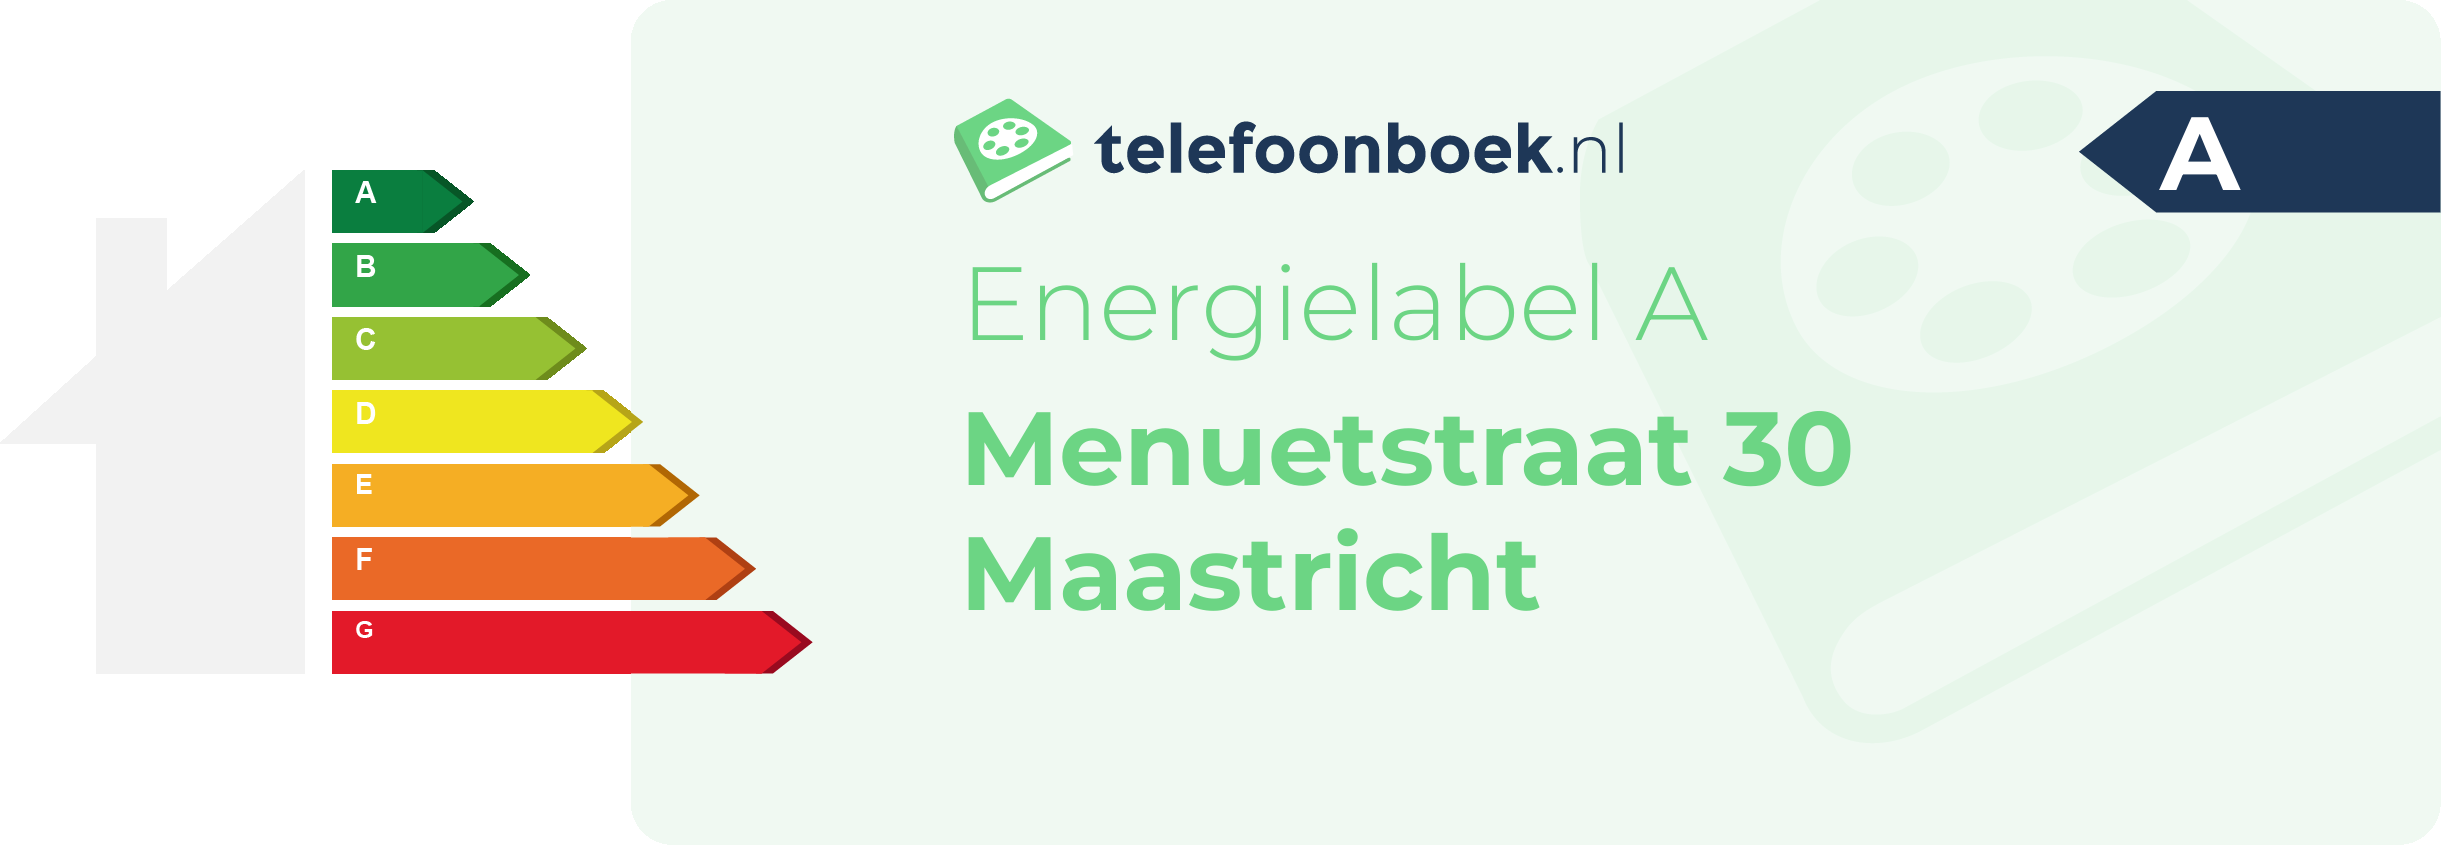 Energielabel Menuetstraat 30 Maastricht